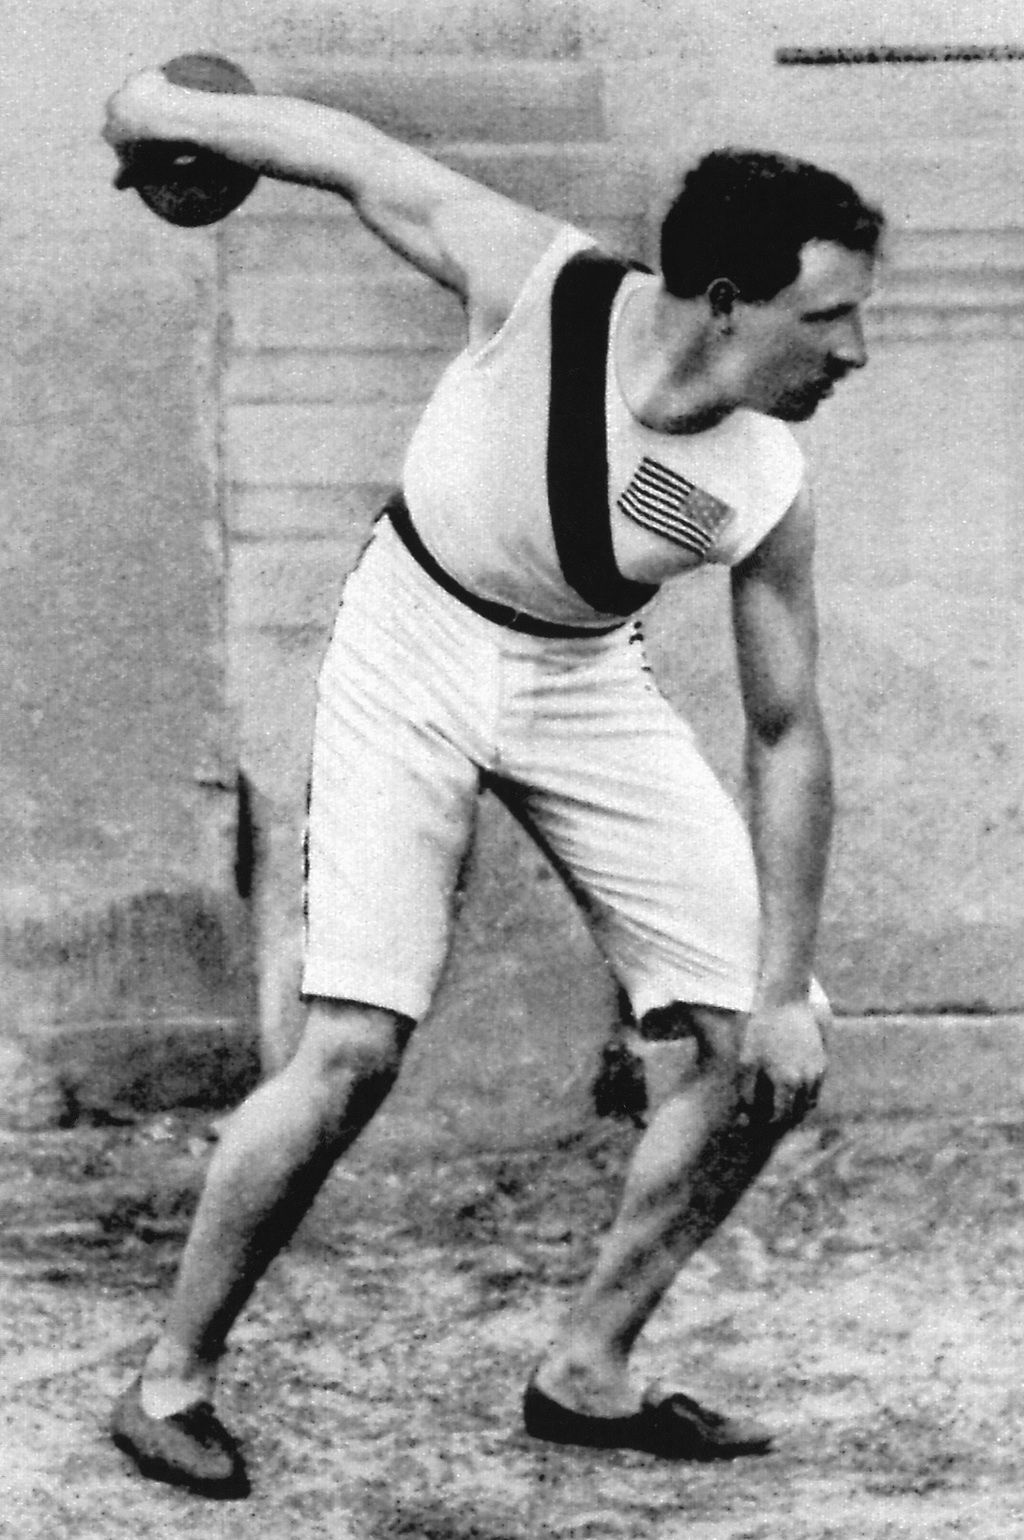 Obrazem: Tak vypadala první novodobá olympiáda v roce 1896